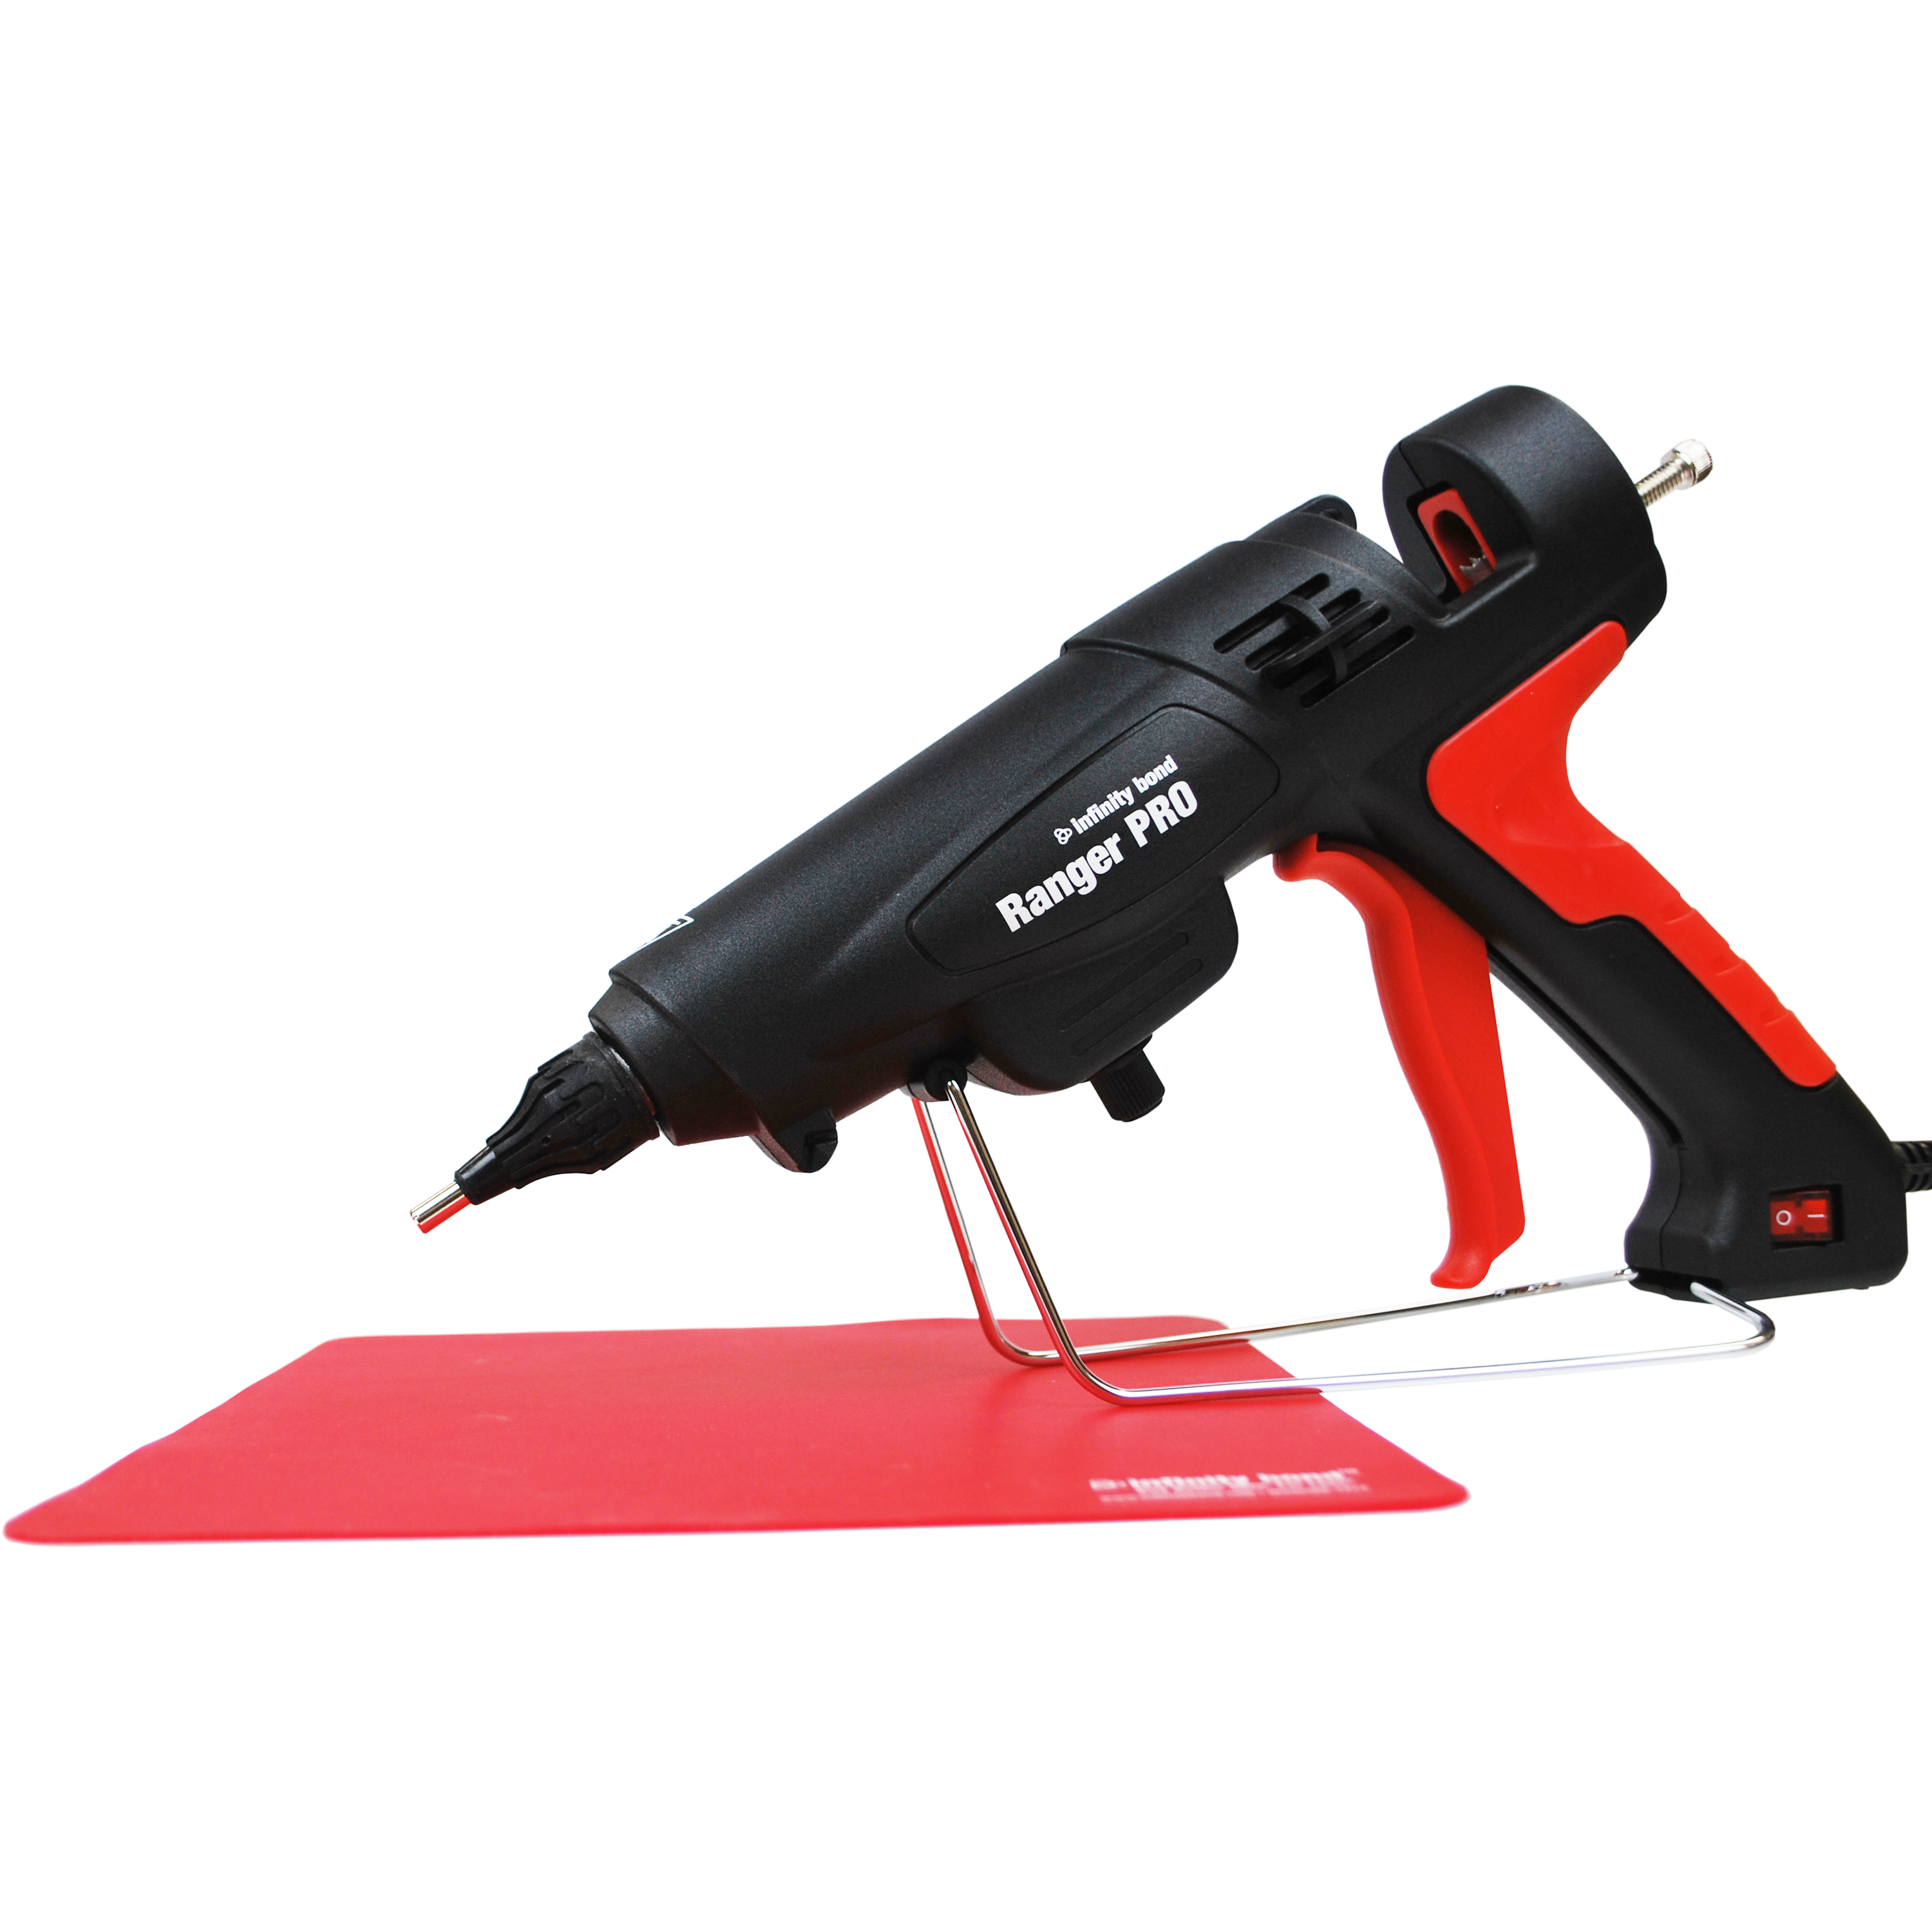 Ranger PRO - High Performance Industrial Hot Melt Glue Gun